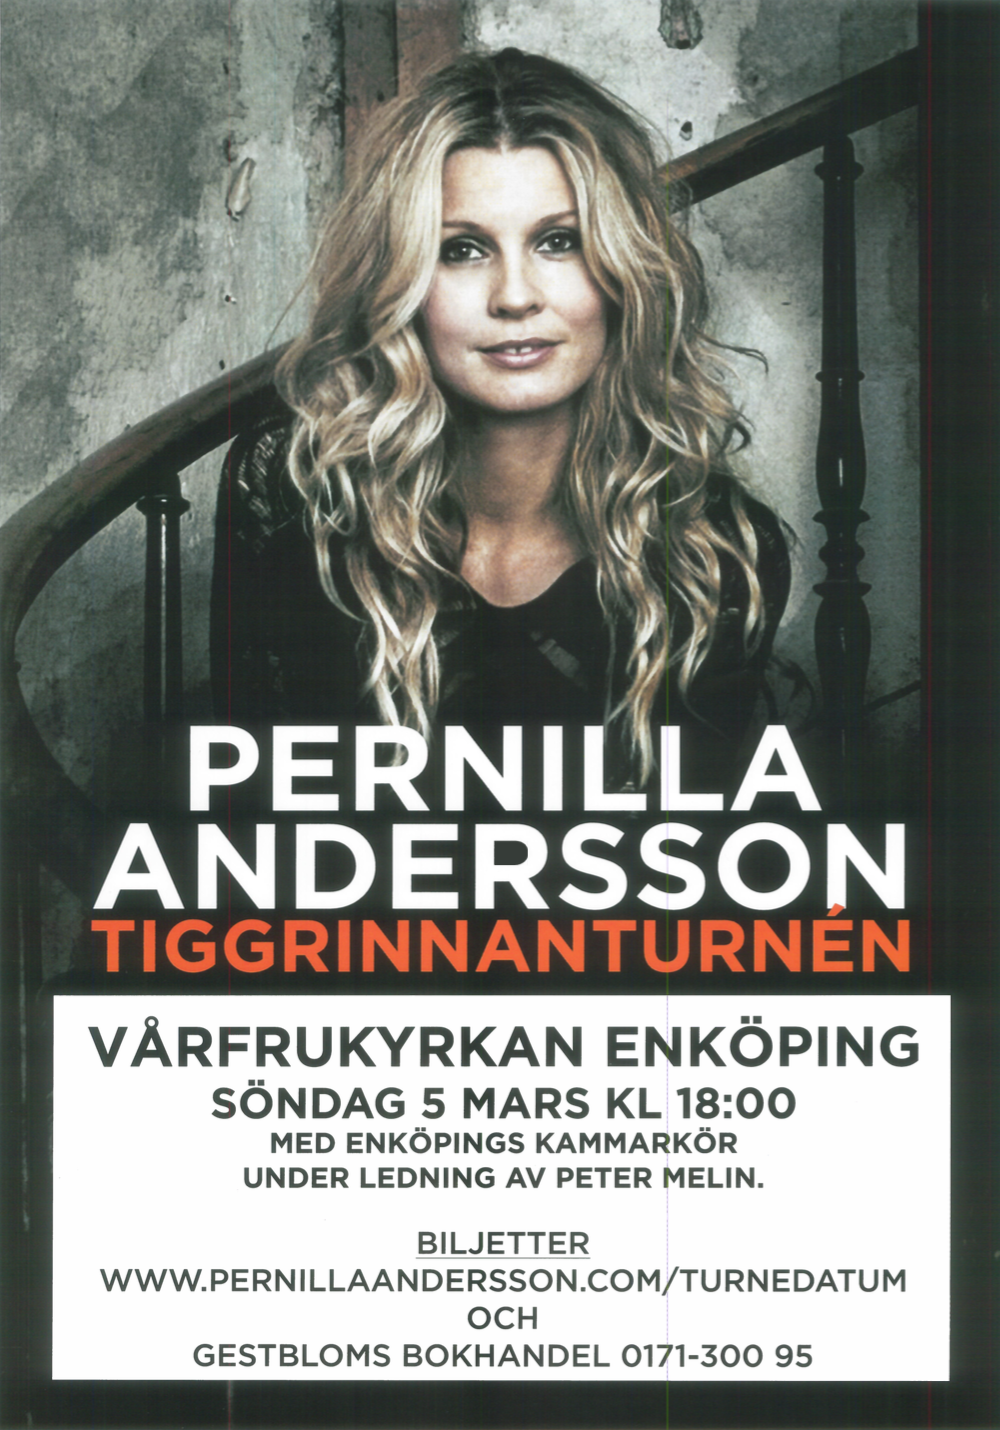 2017-affisch-pernilla-andersson-tigrinnanturnen-med-enkopings-kammarkor